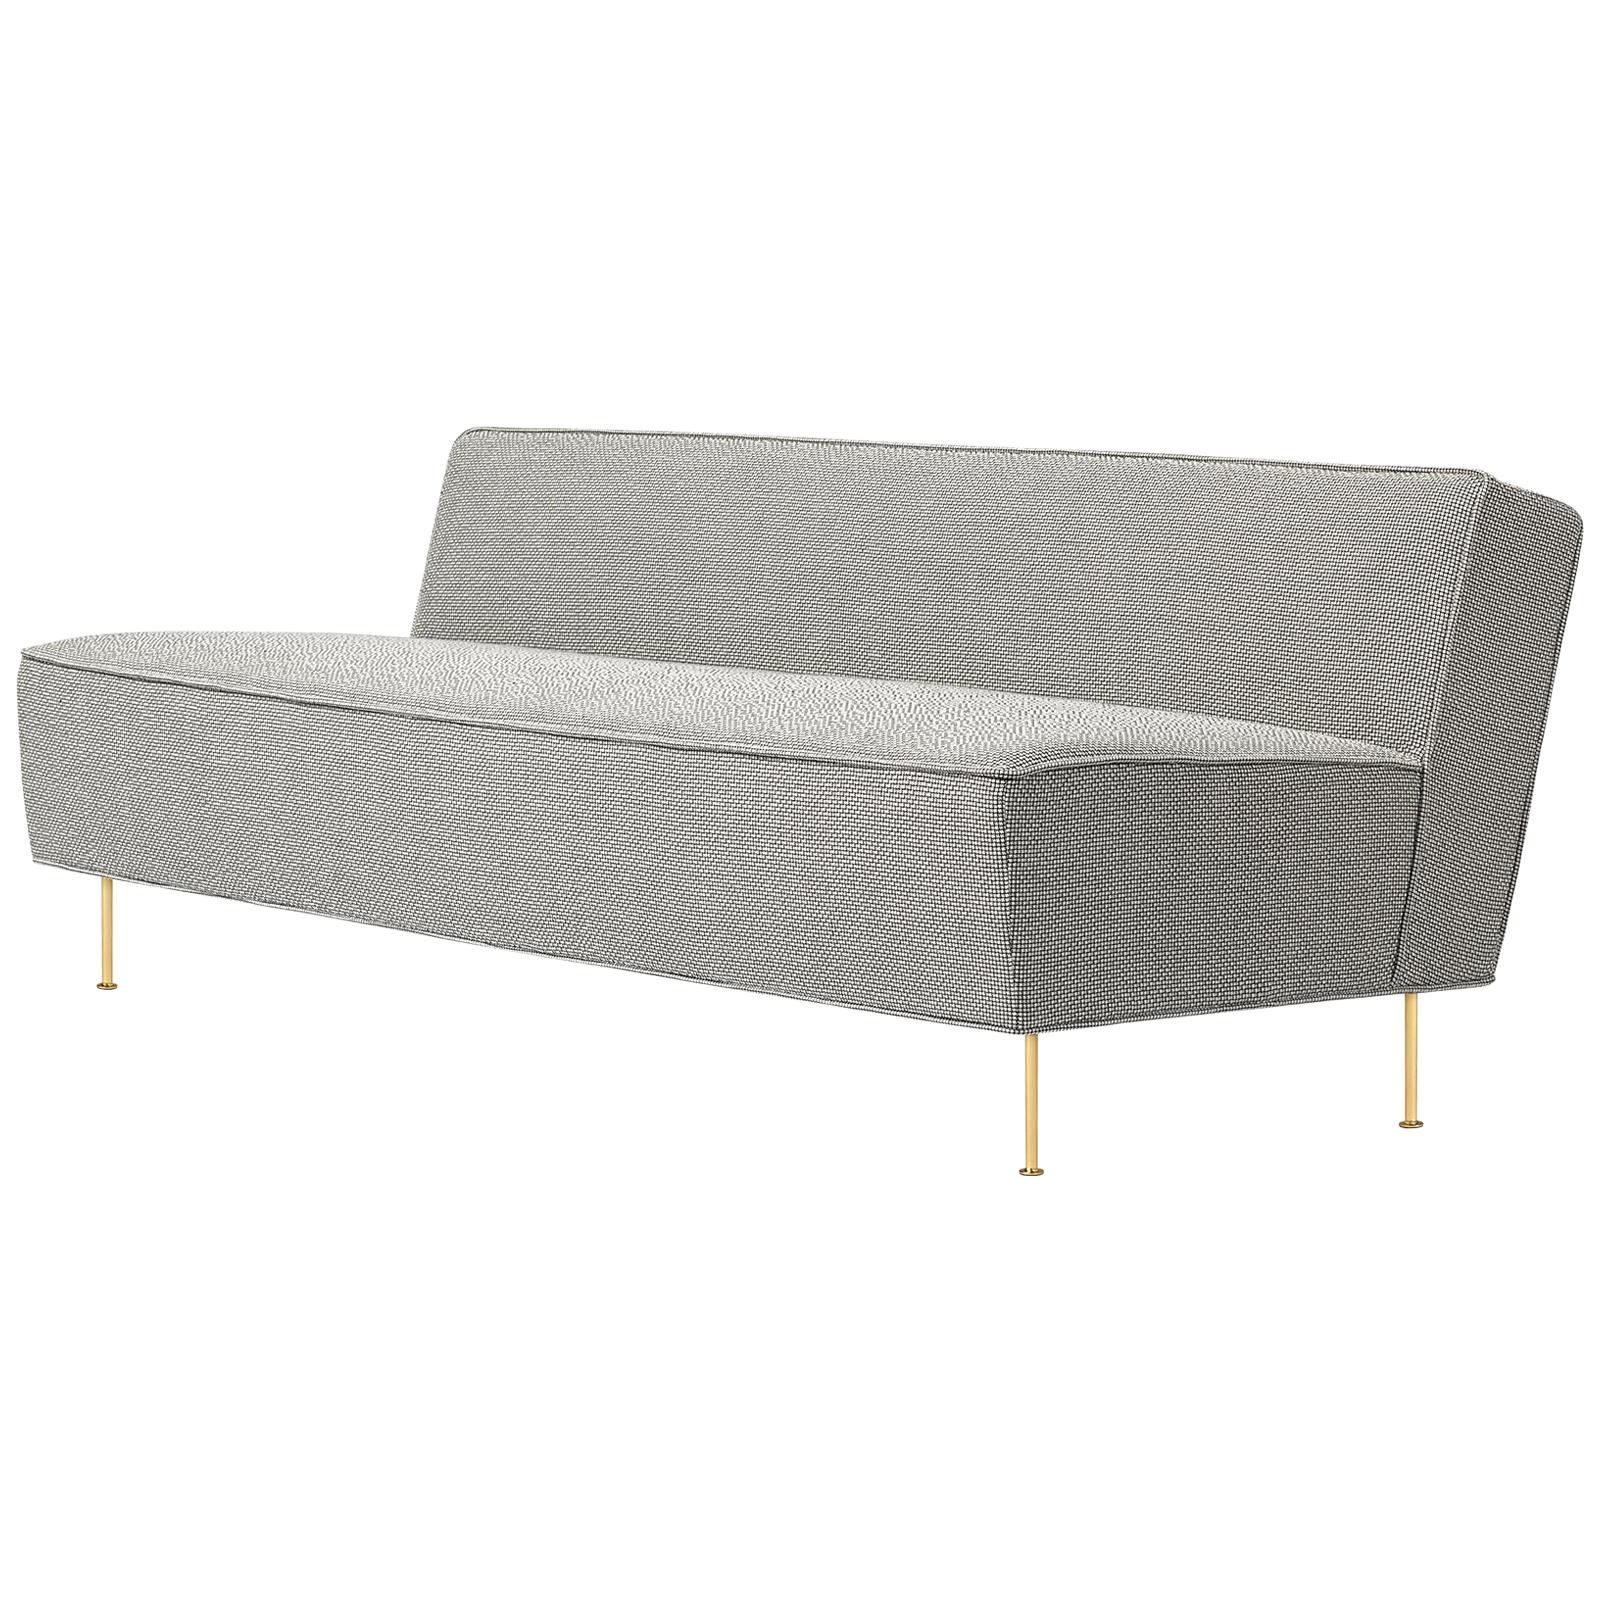 Canapé ligne moderne, entièrement tapissé, petit modèle